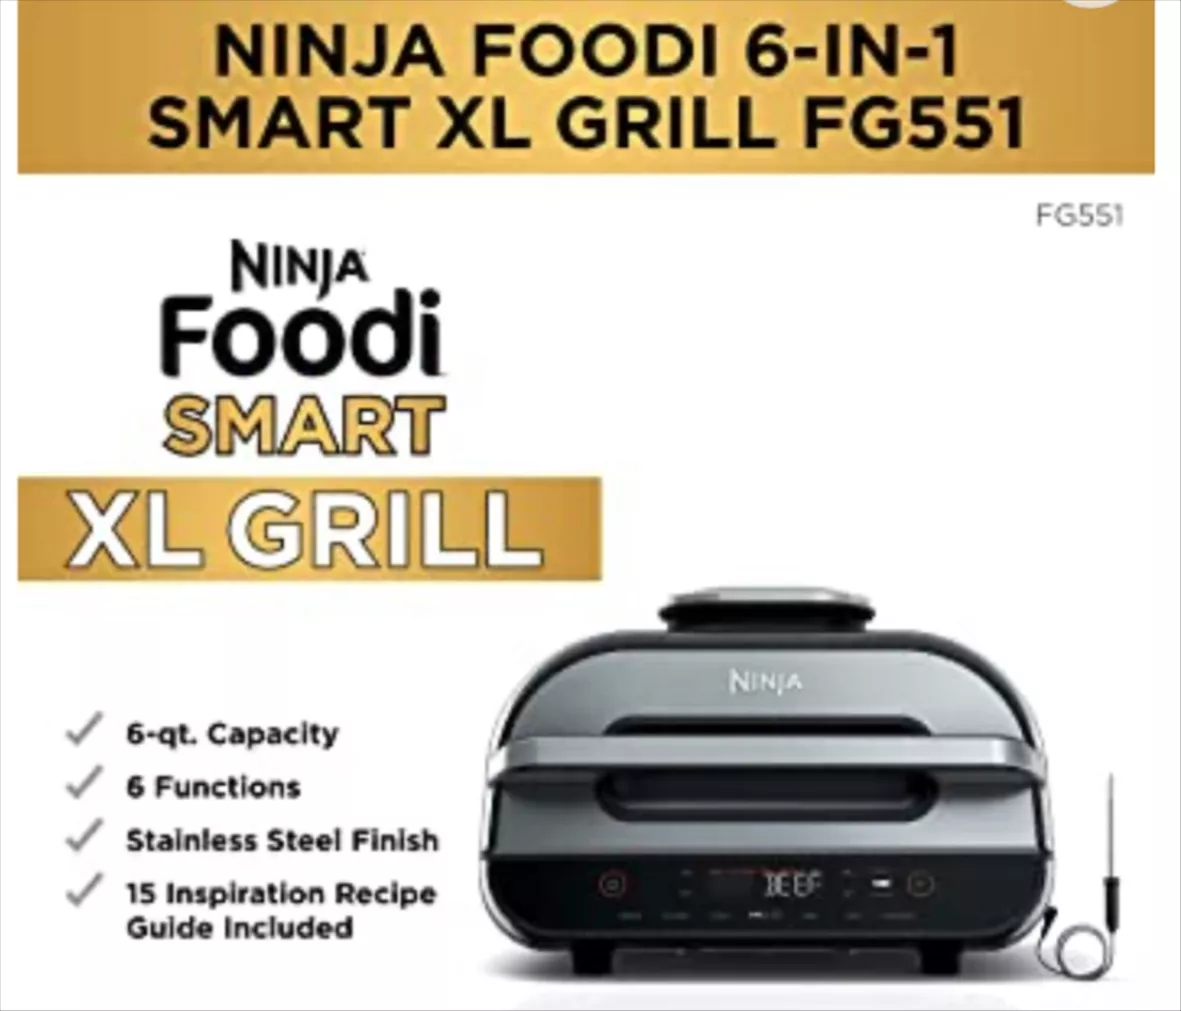 Ninja 6-in-1 Indoor Grill and Air Fryer is 50% off